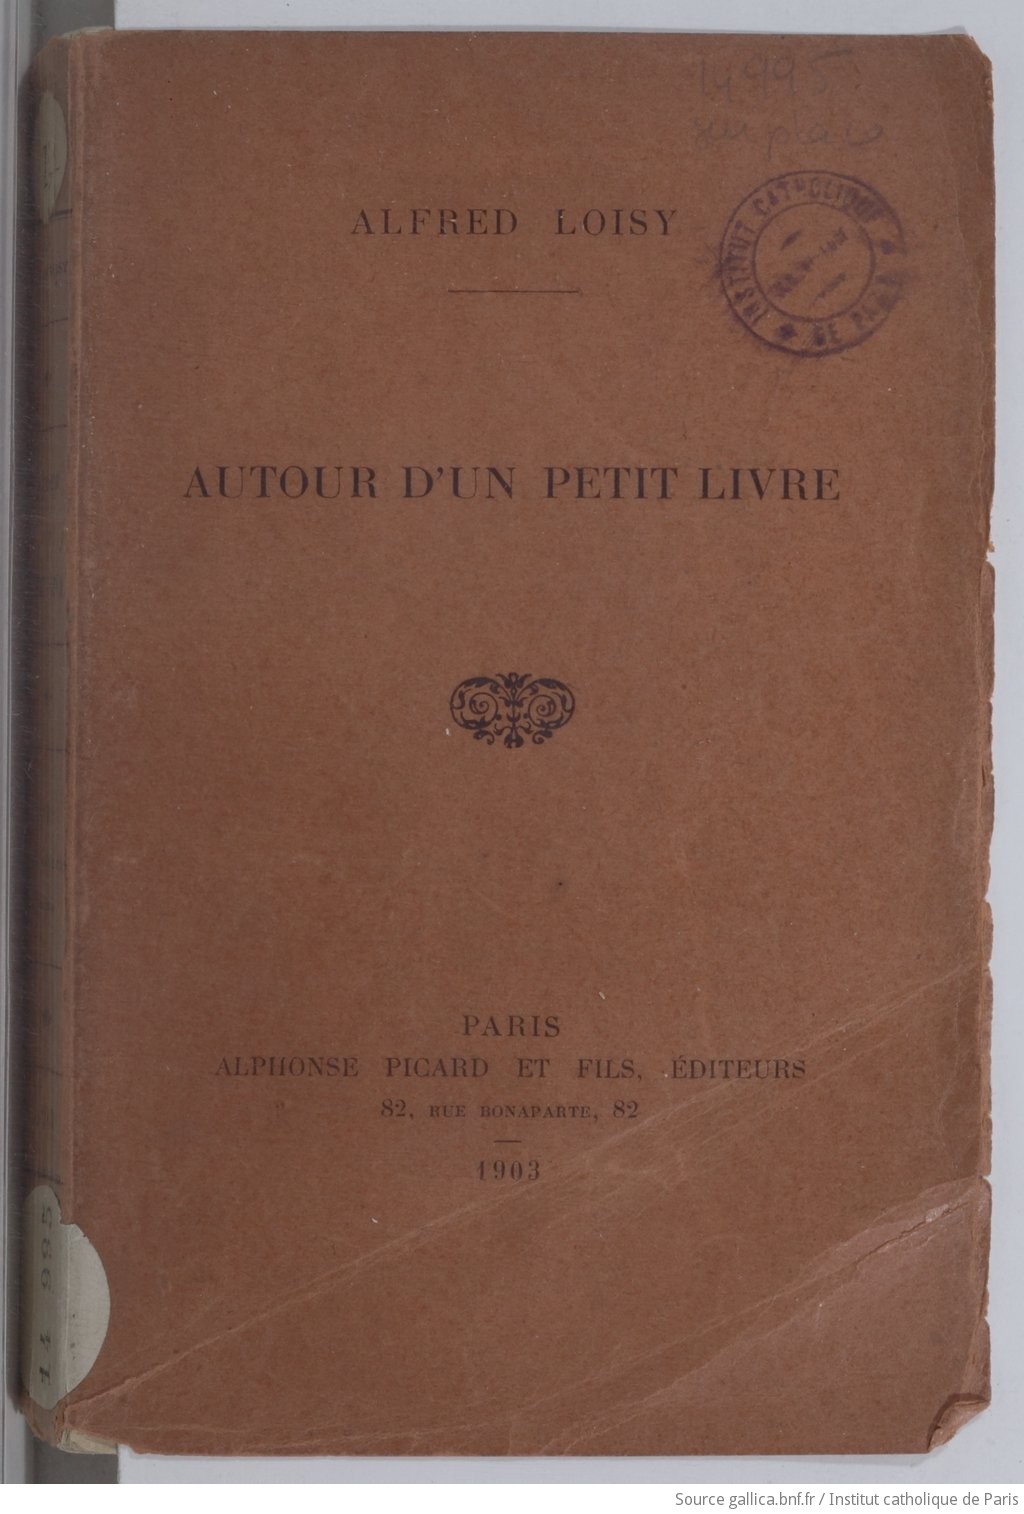 Autour d'un petit livre / Alfred Loisy